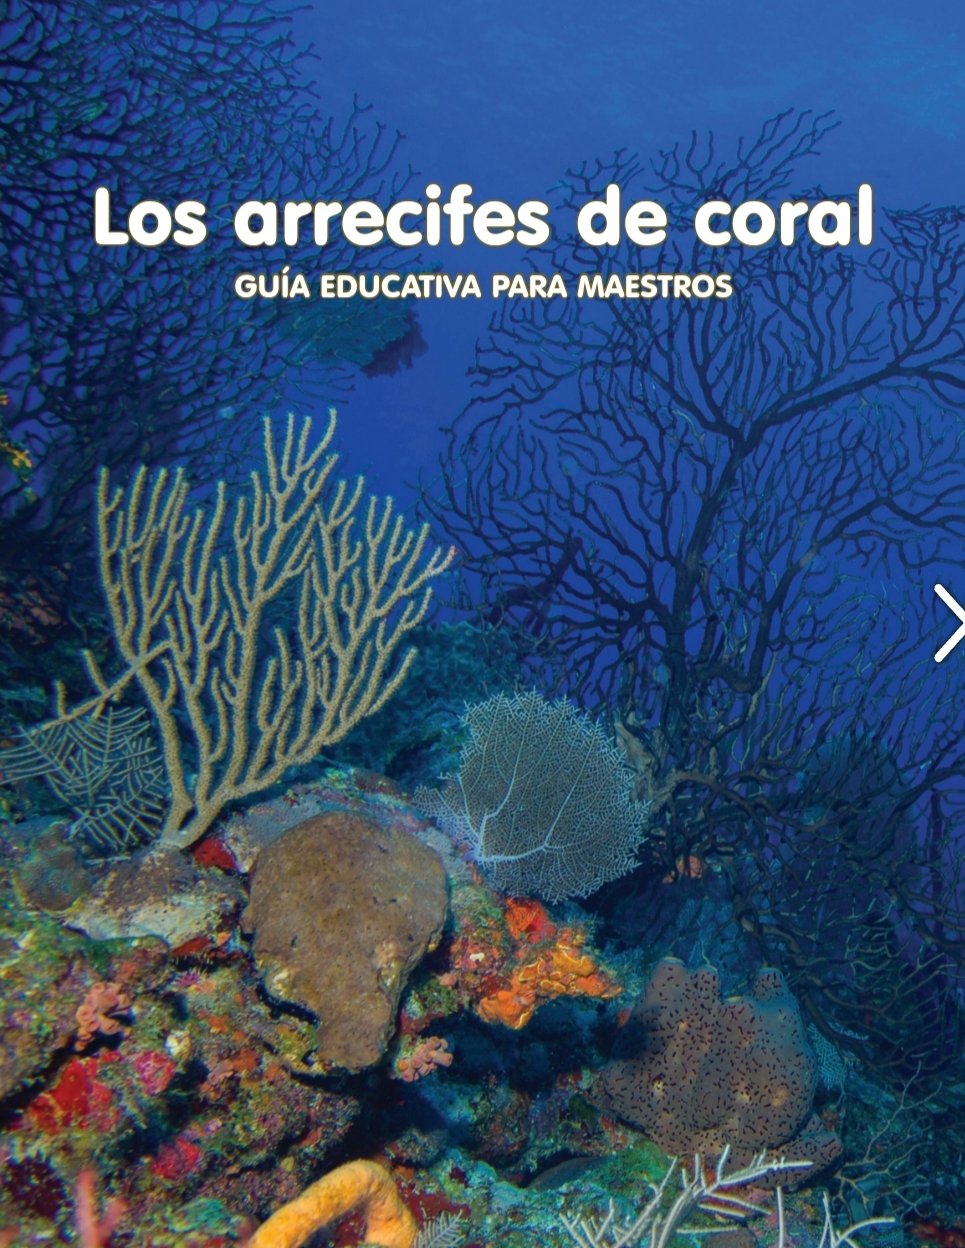 Fértil cocaína molestarse Corales del Este Puerto Rico 🇵🇷 on Twitter: "Guía educativa de  @SeaGrantPR para maestros sobre arrecifes de coral👇🏽  https://t.co/7qs6jv9a8k https://t.co/Q85otdDGqg" / Twitter